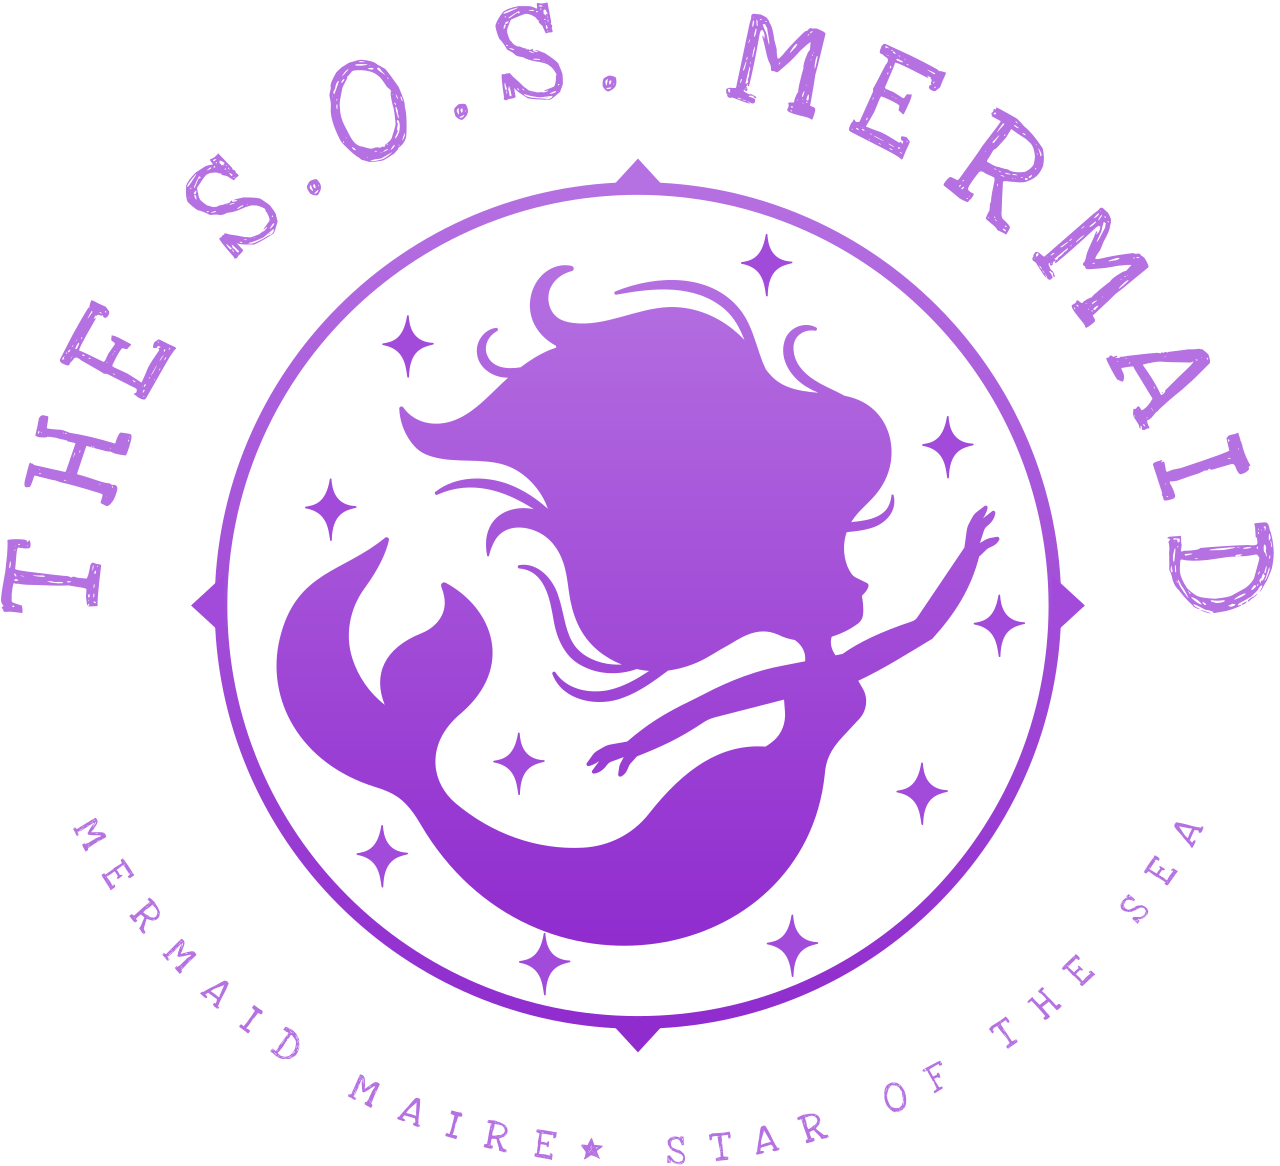 The S.O.S. Mermaid's logo